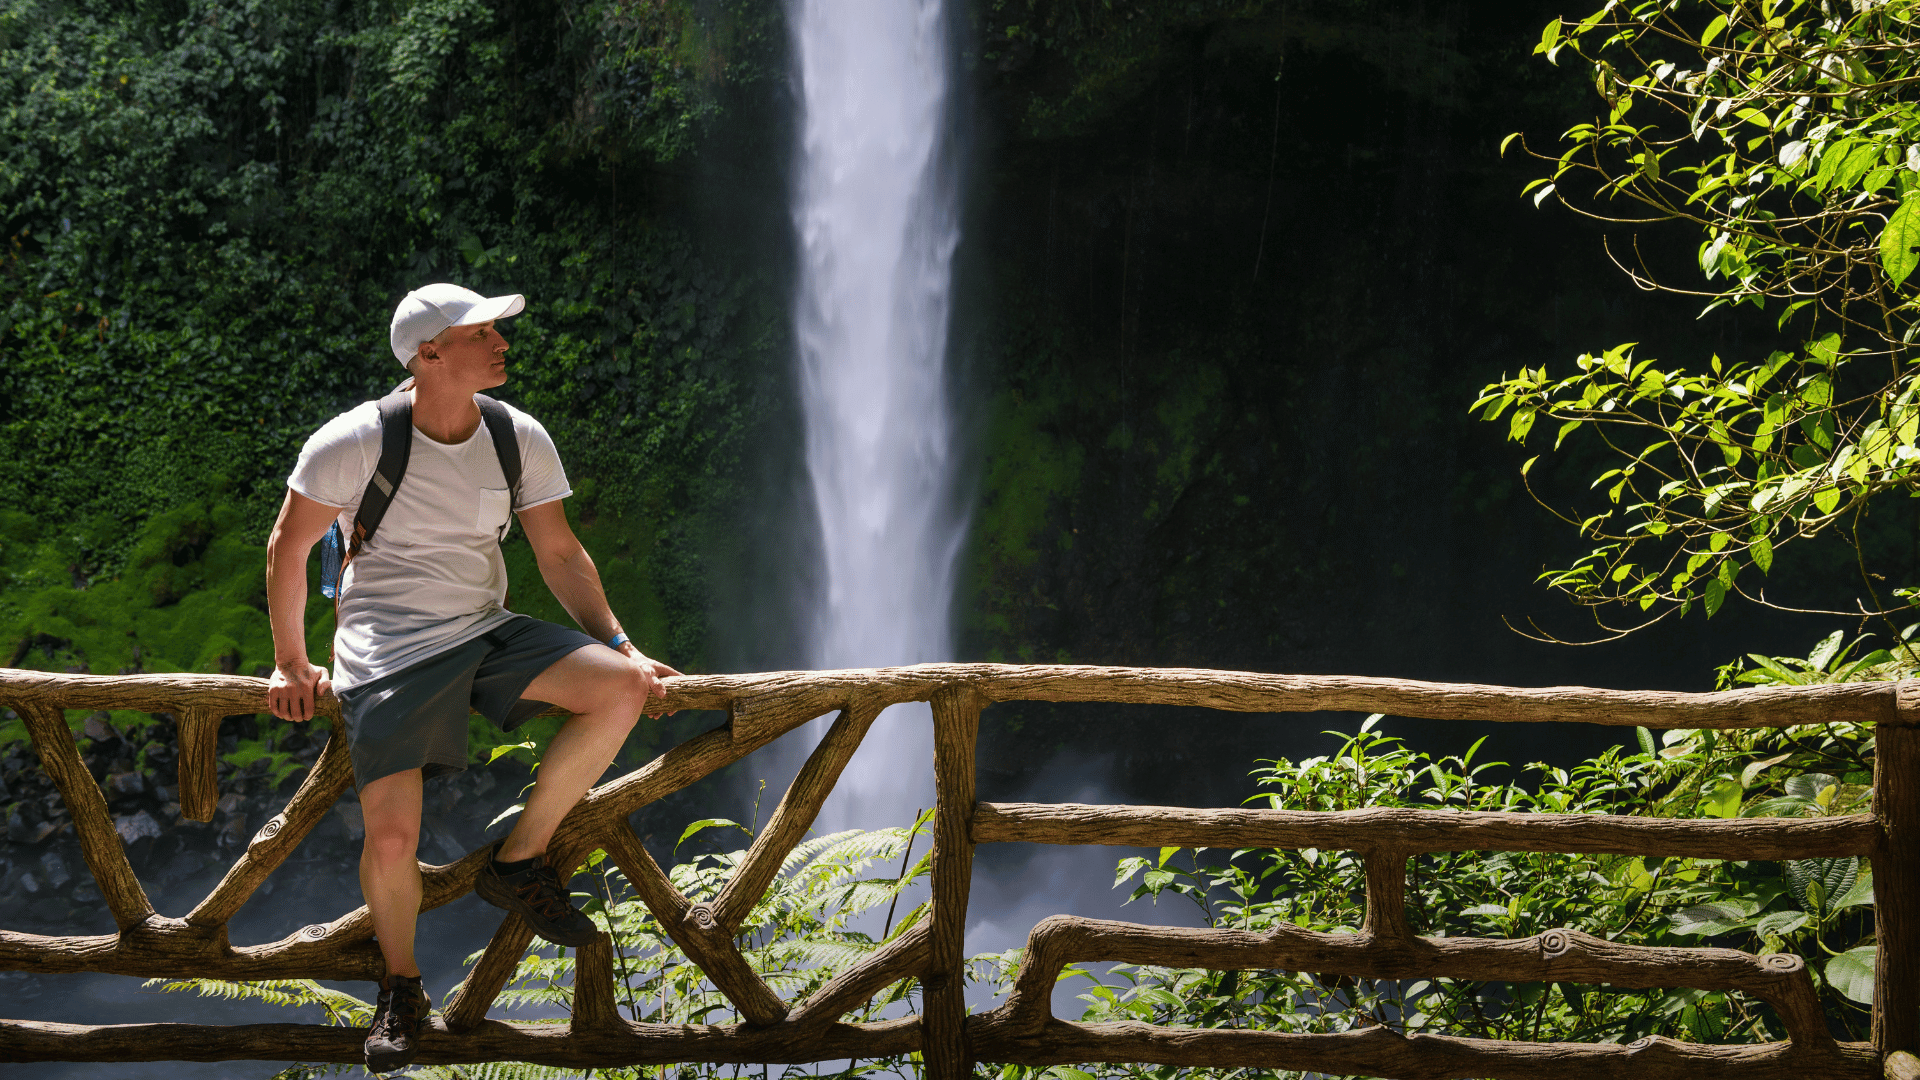 Tourist at the La Fortuna Waterfall in Costa Rica